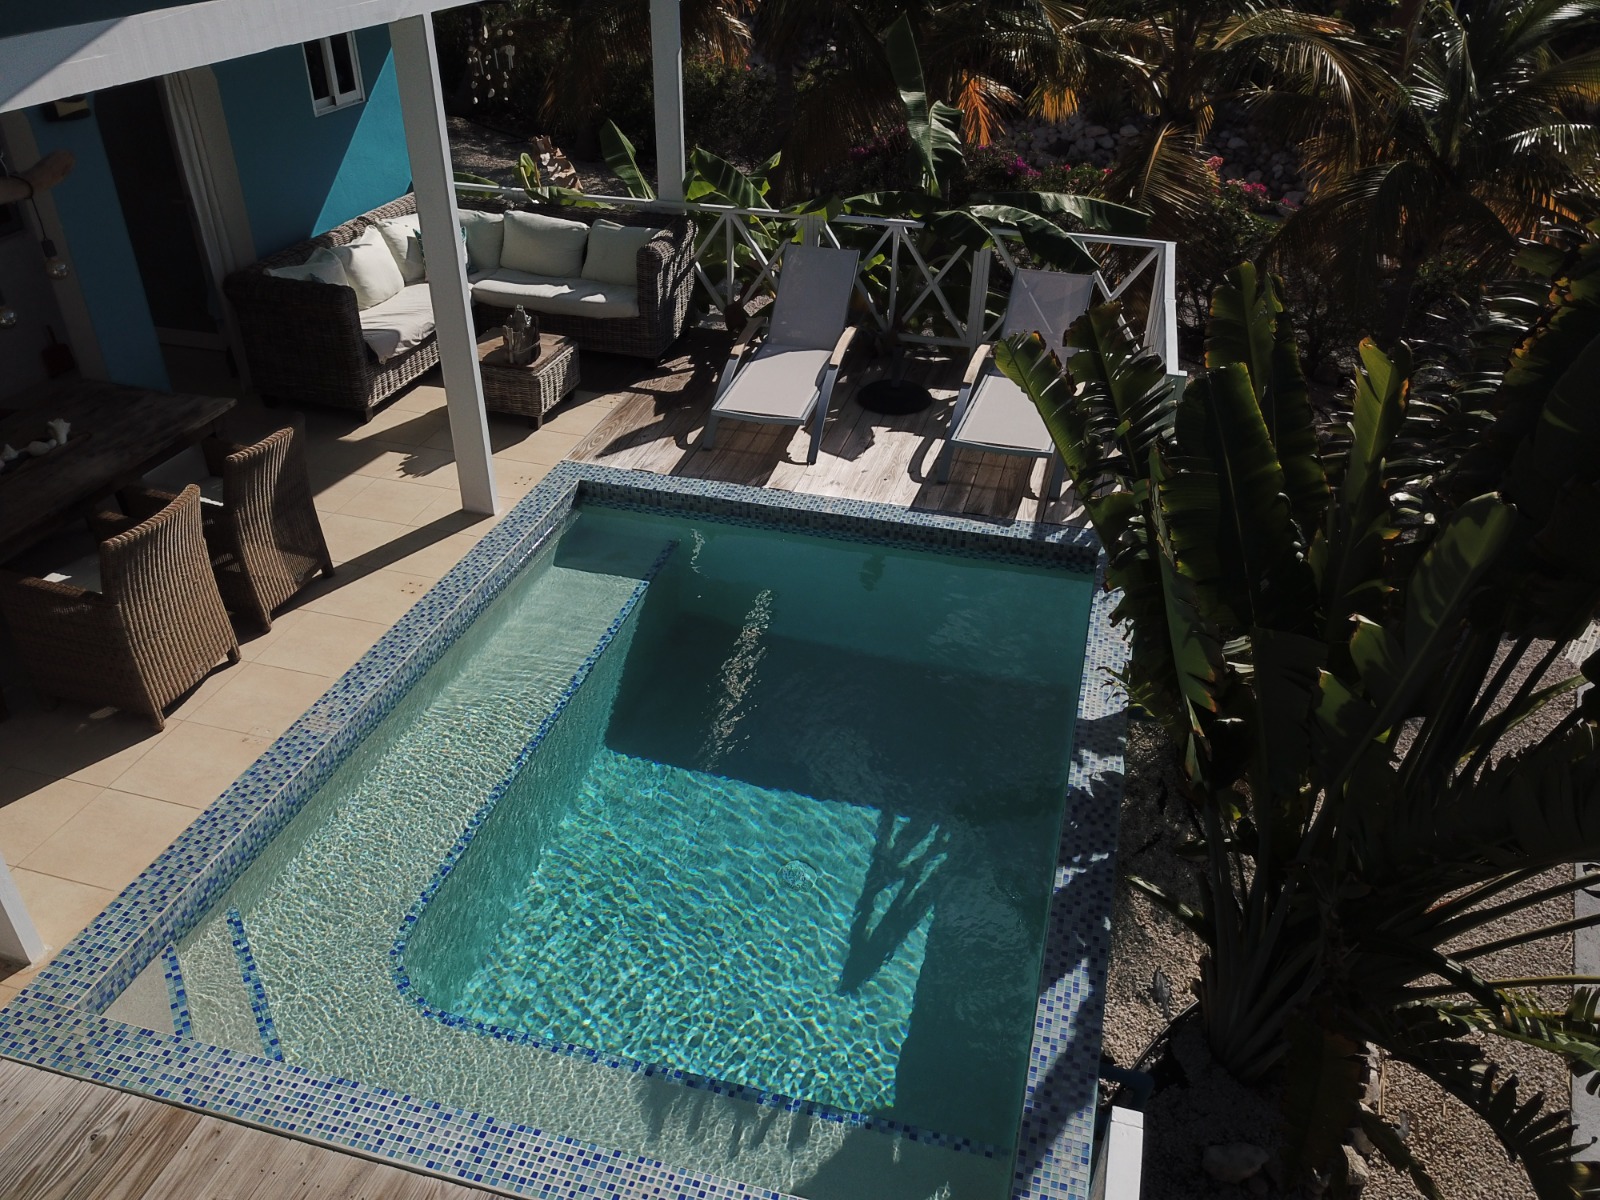 Ferienhaus Bon Tardi mit Pool im Villapark Fontein auf Curacao